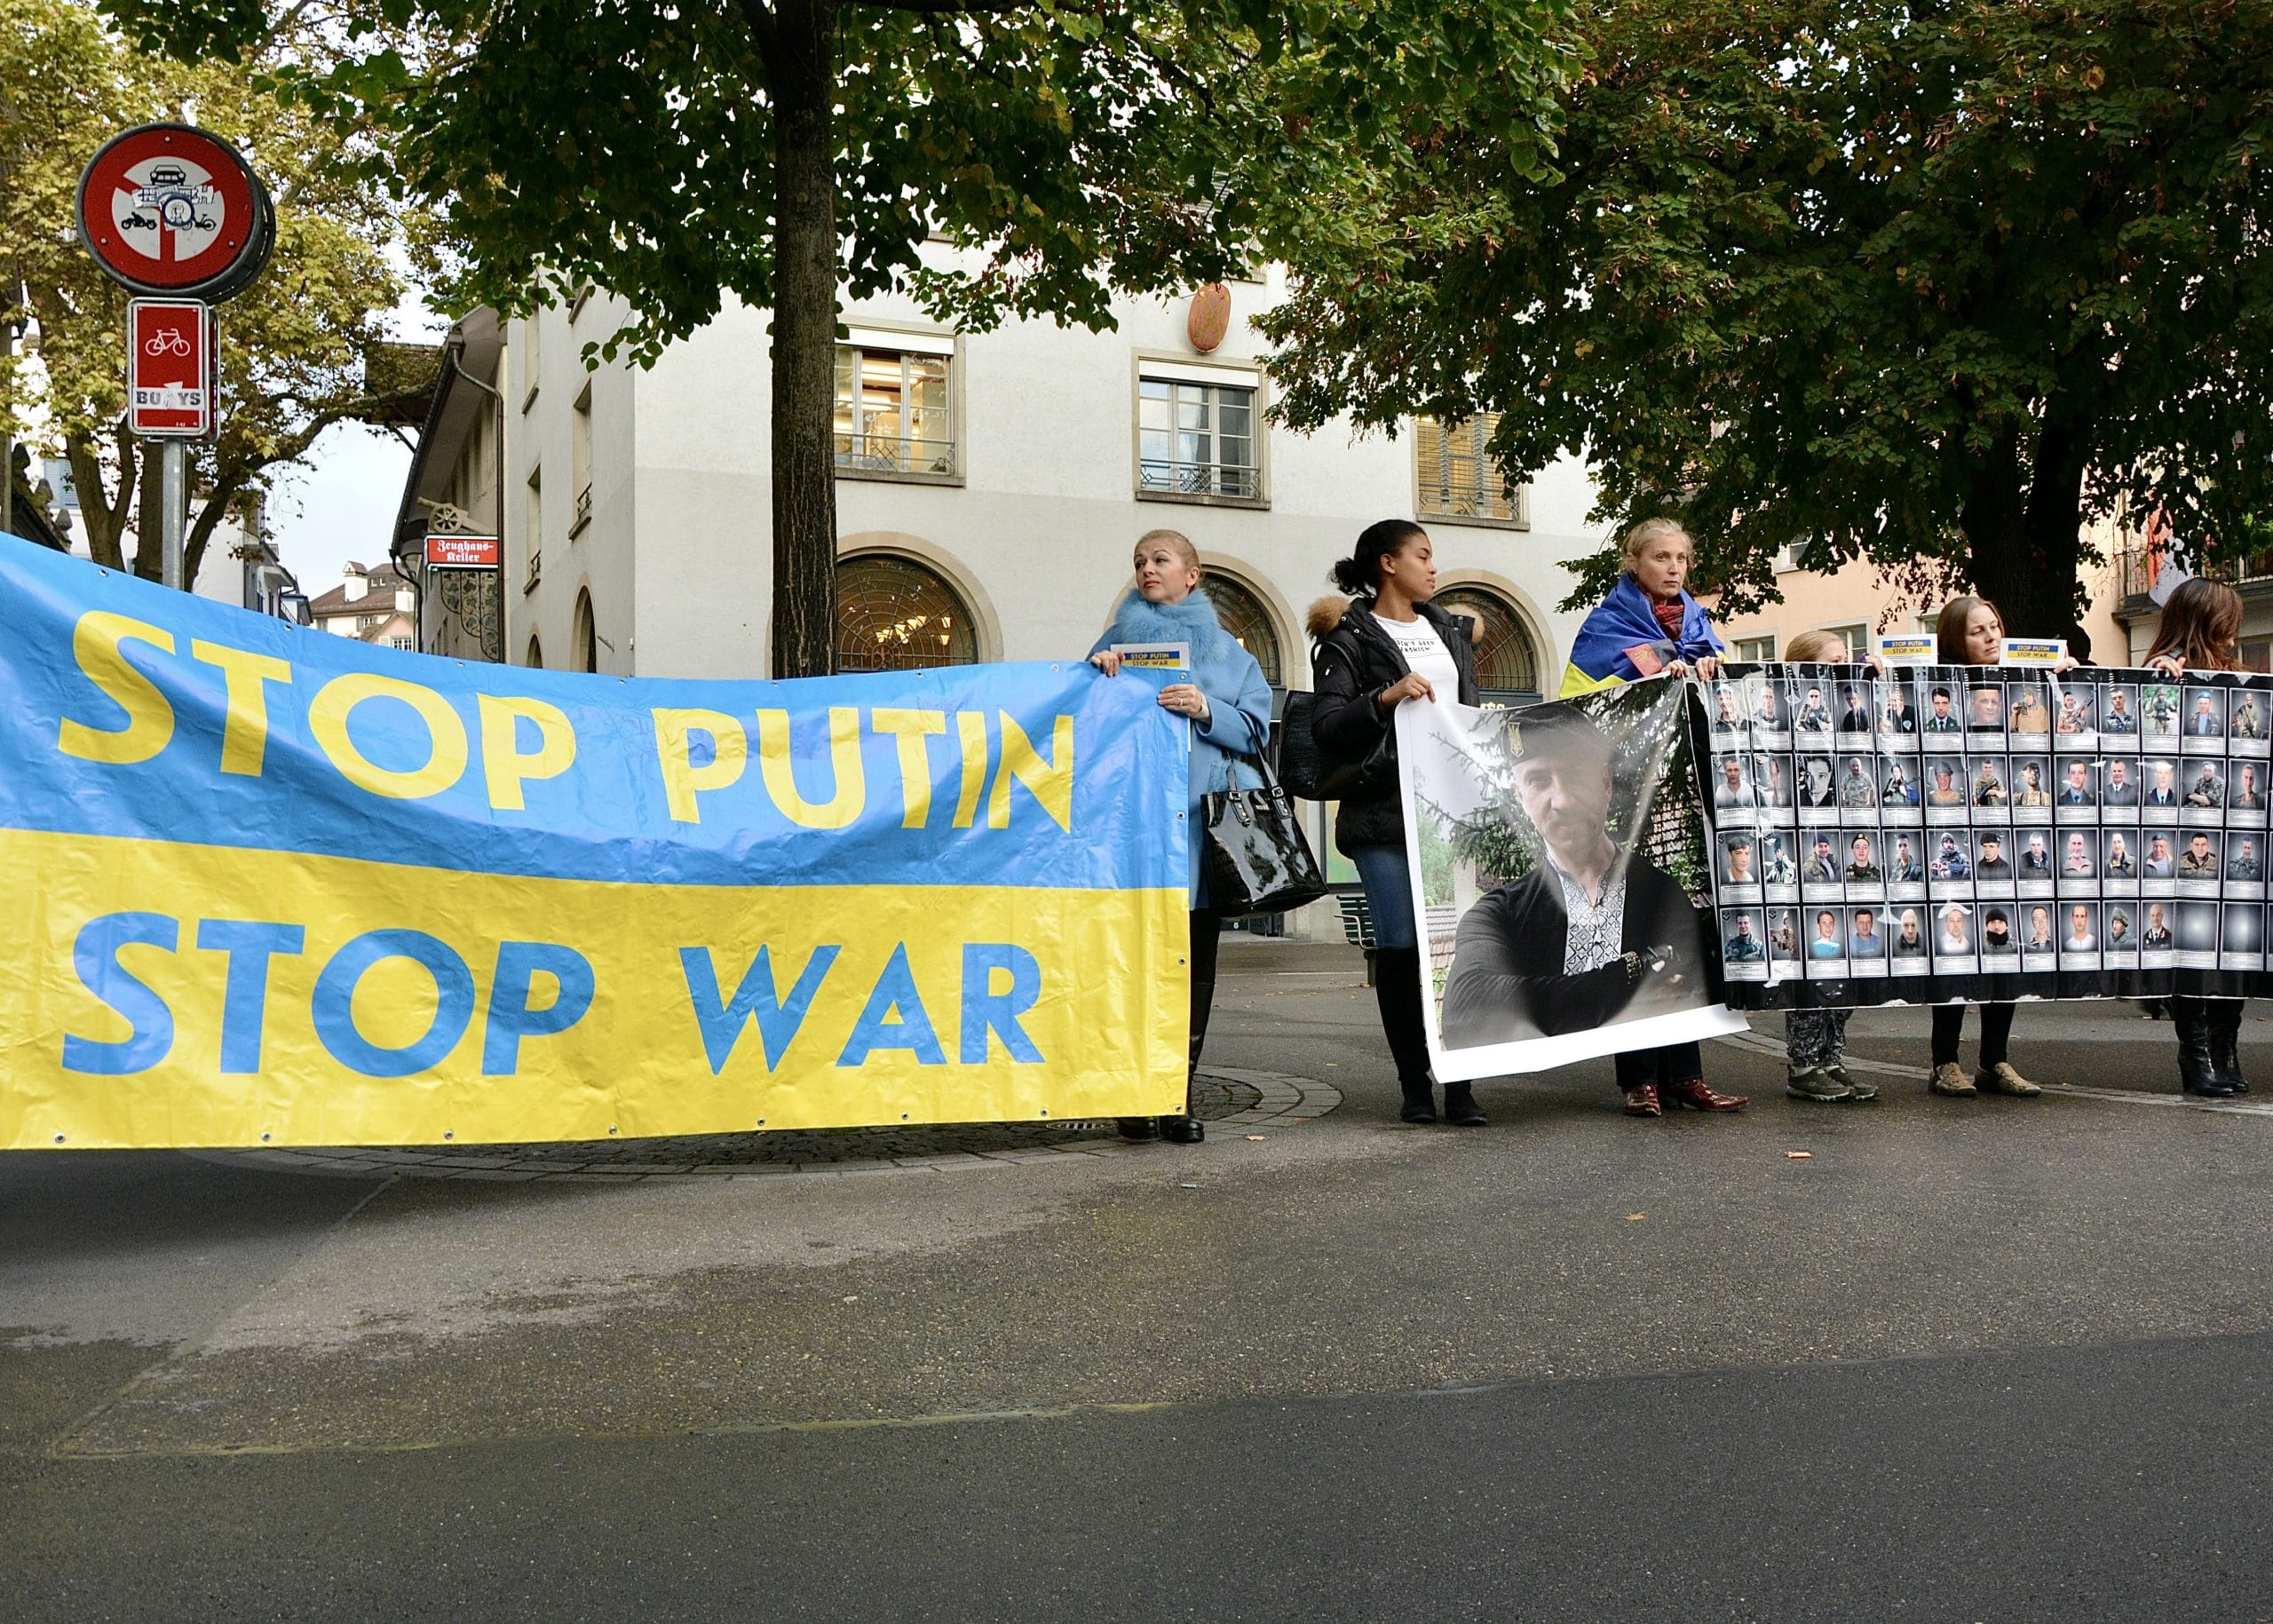 Акции «Stop Putin - Stop War» украинская диаспора проводила в сотне городов разных стран, и в Швейцарии тоже. Цюрих, 14 октября 2016 г. (© schwingen.net)